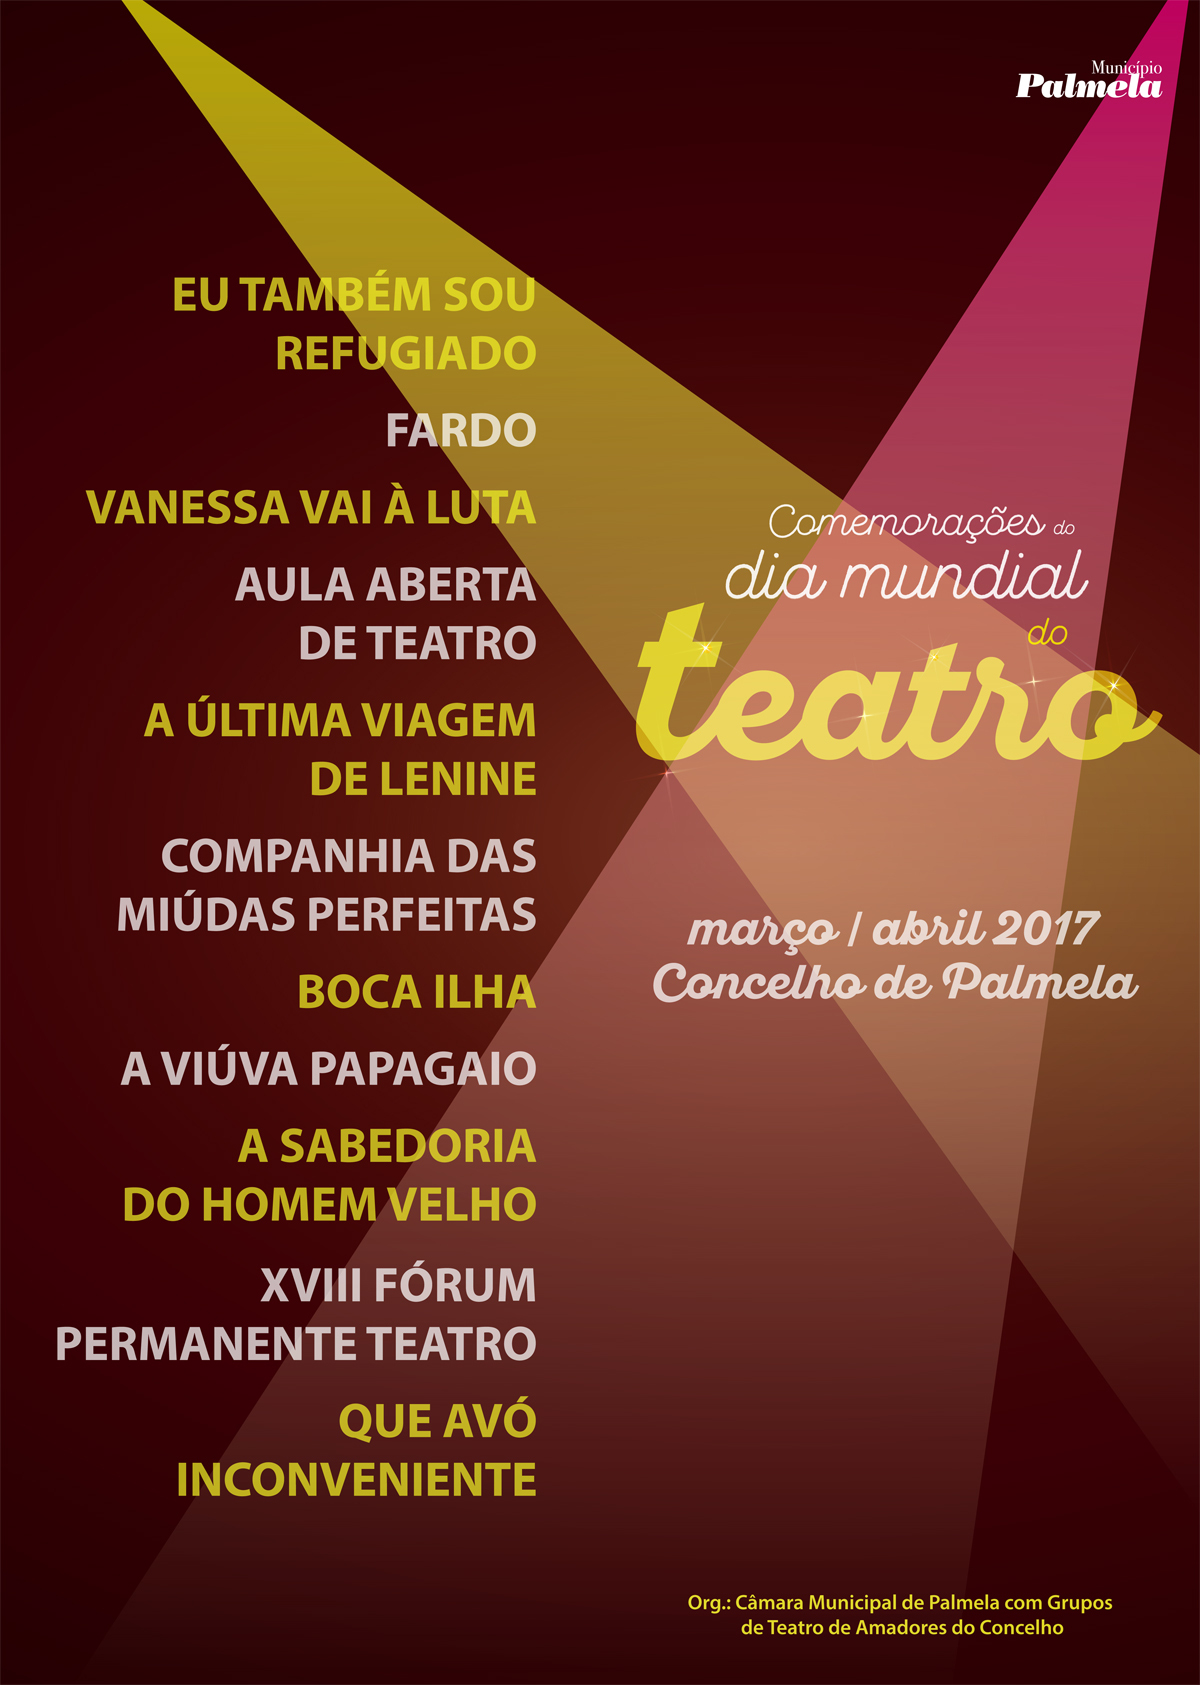 Comemorações do Dia Mundial do Teatro